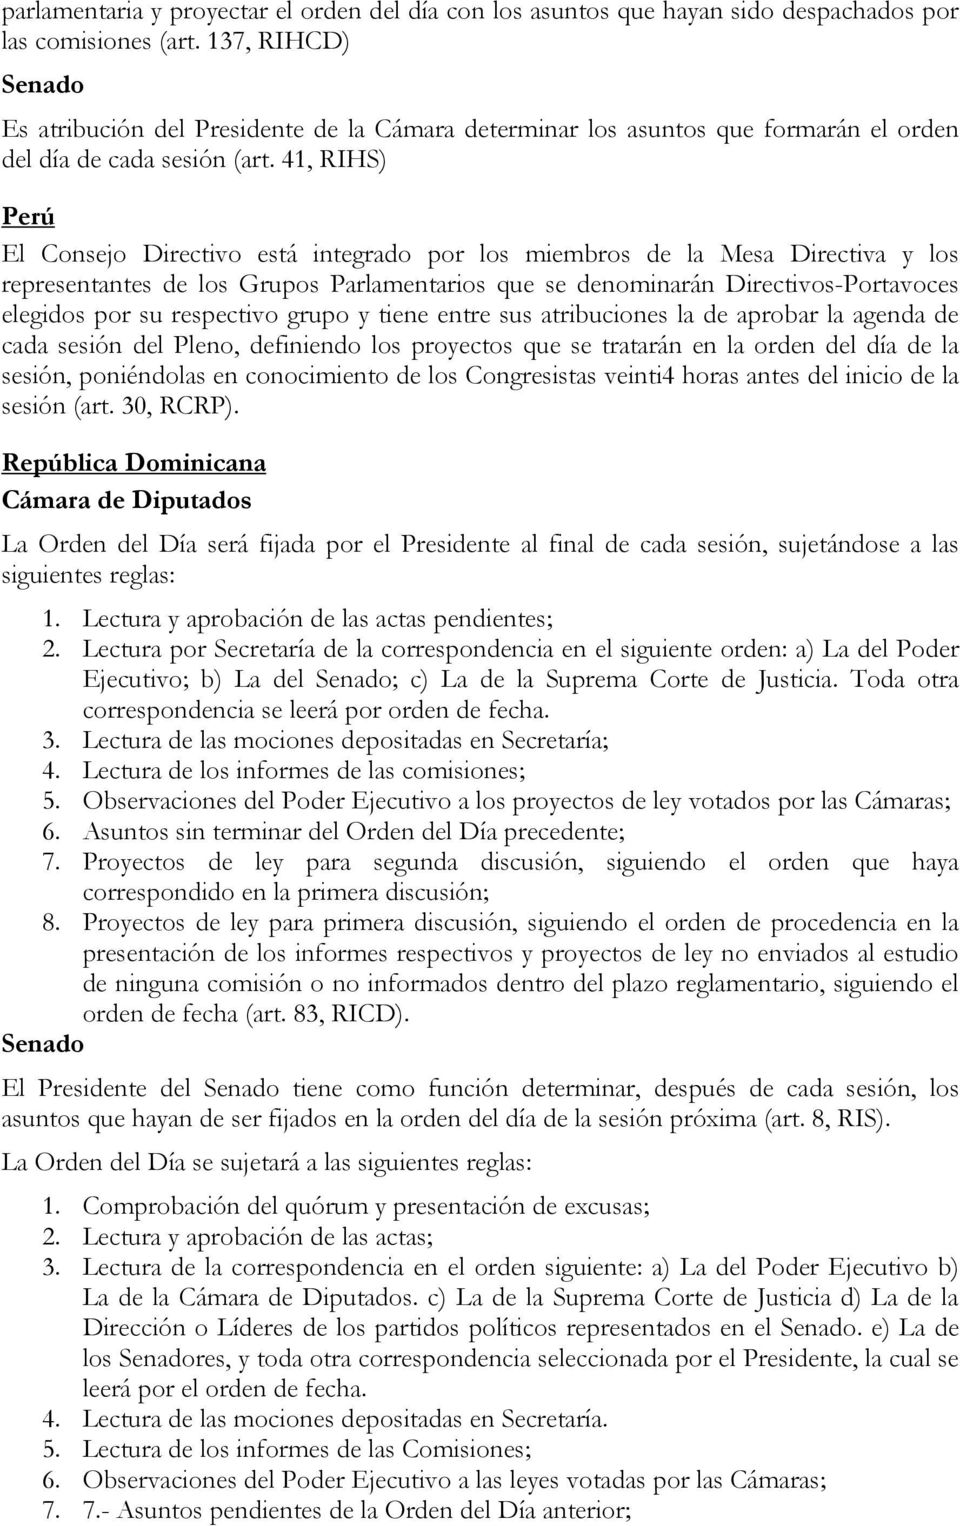 41, RIHS) Perú El Consejo Directivo está integrado por los miembros de la Mesa Directiva y los representantes de los Grupos Parlamentarios que se denominarán Directivos-Portavoces elegidos por su